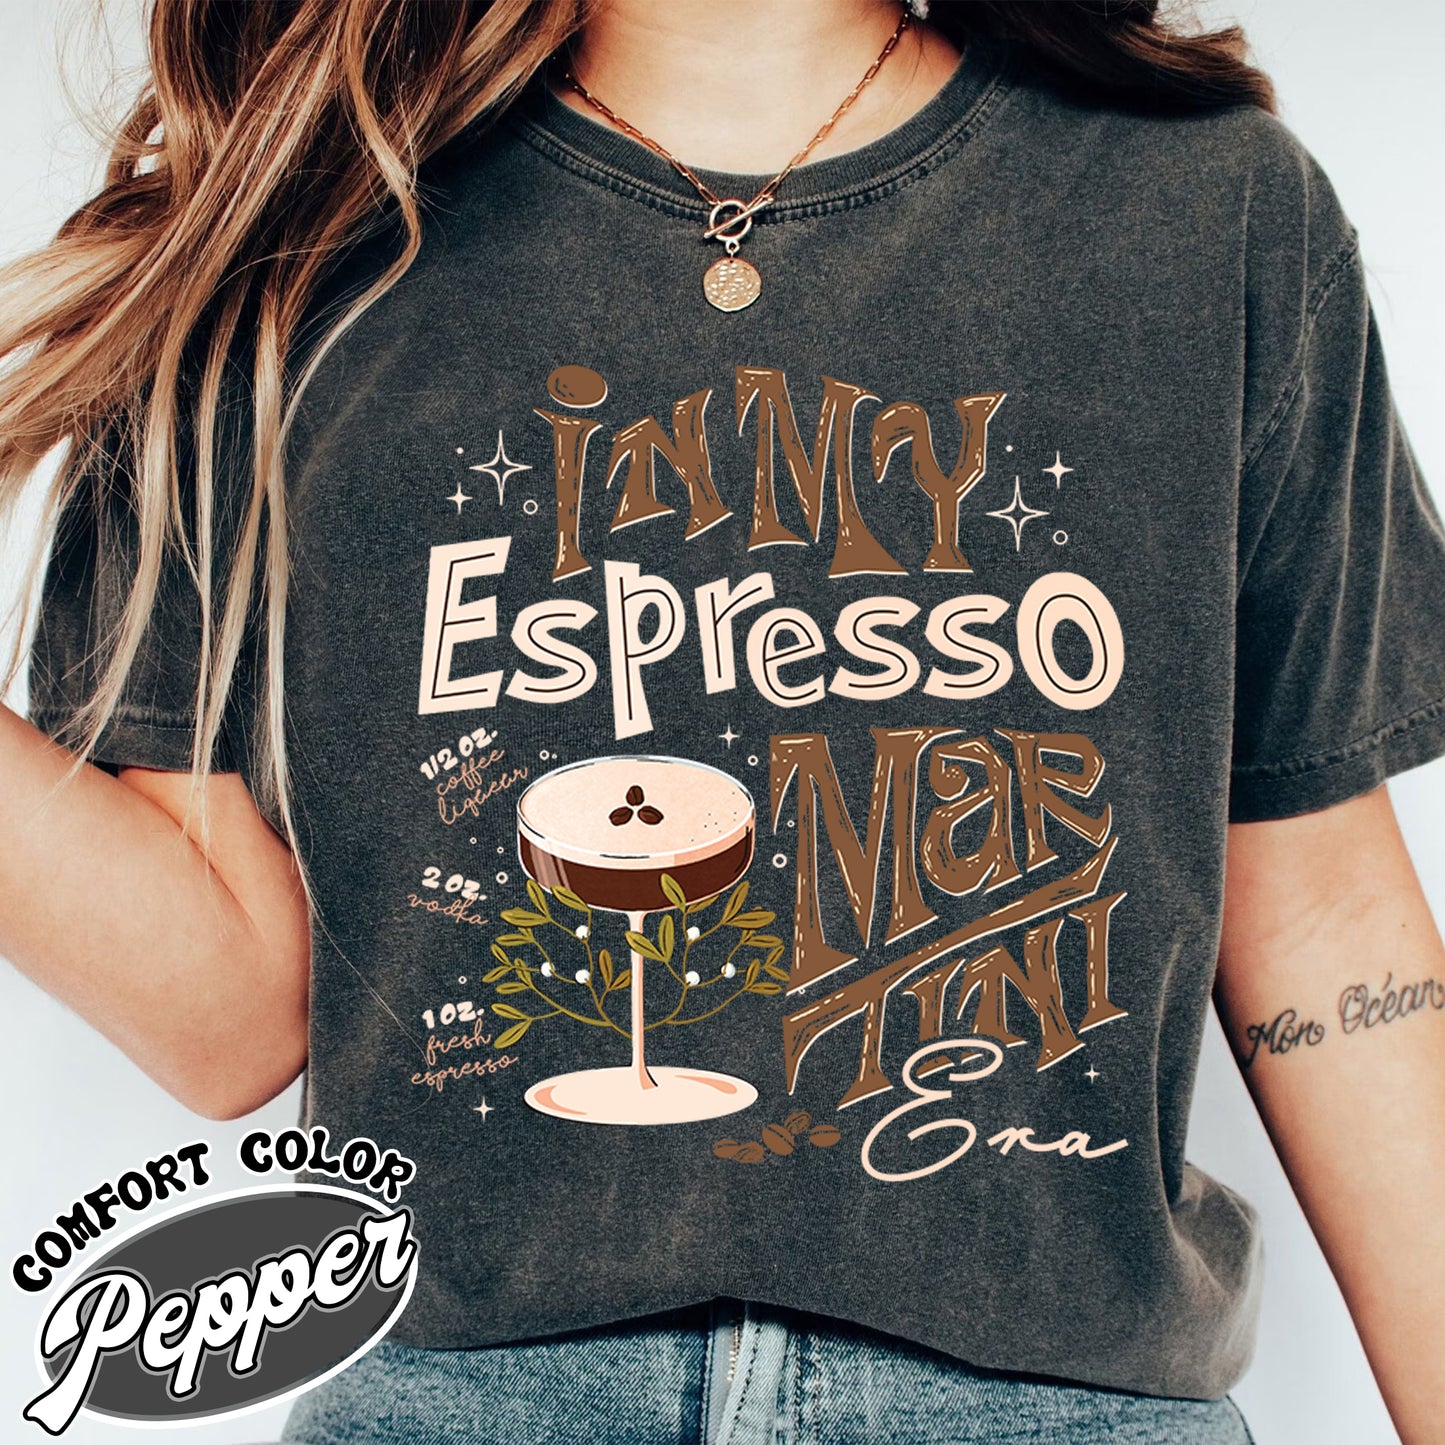 Espresso Martini Comfort Color Shirt, Espresso Martini Cocktail Club, Gifts For Espresso Martini Lover, Espresso Martini, Aesthetic Shirt